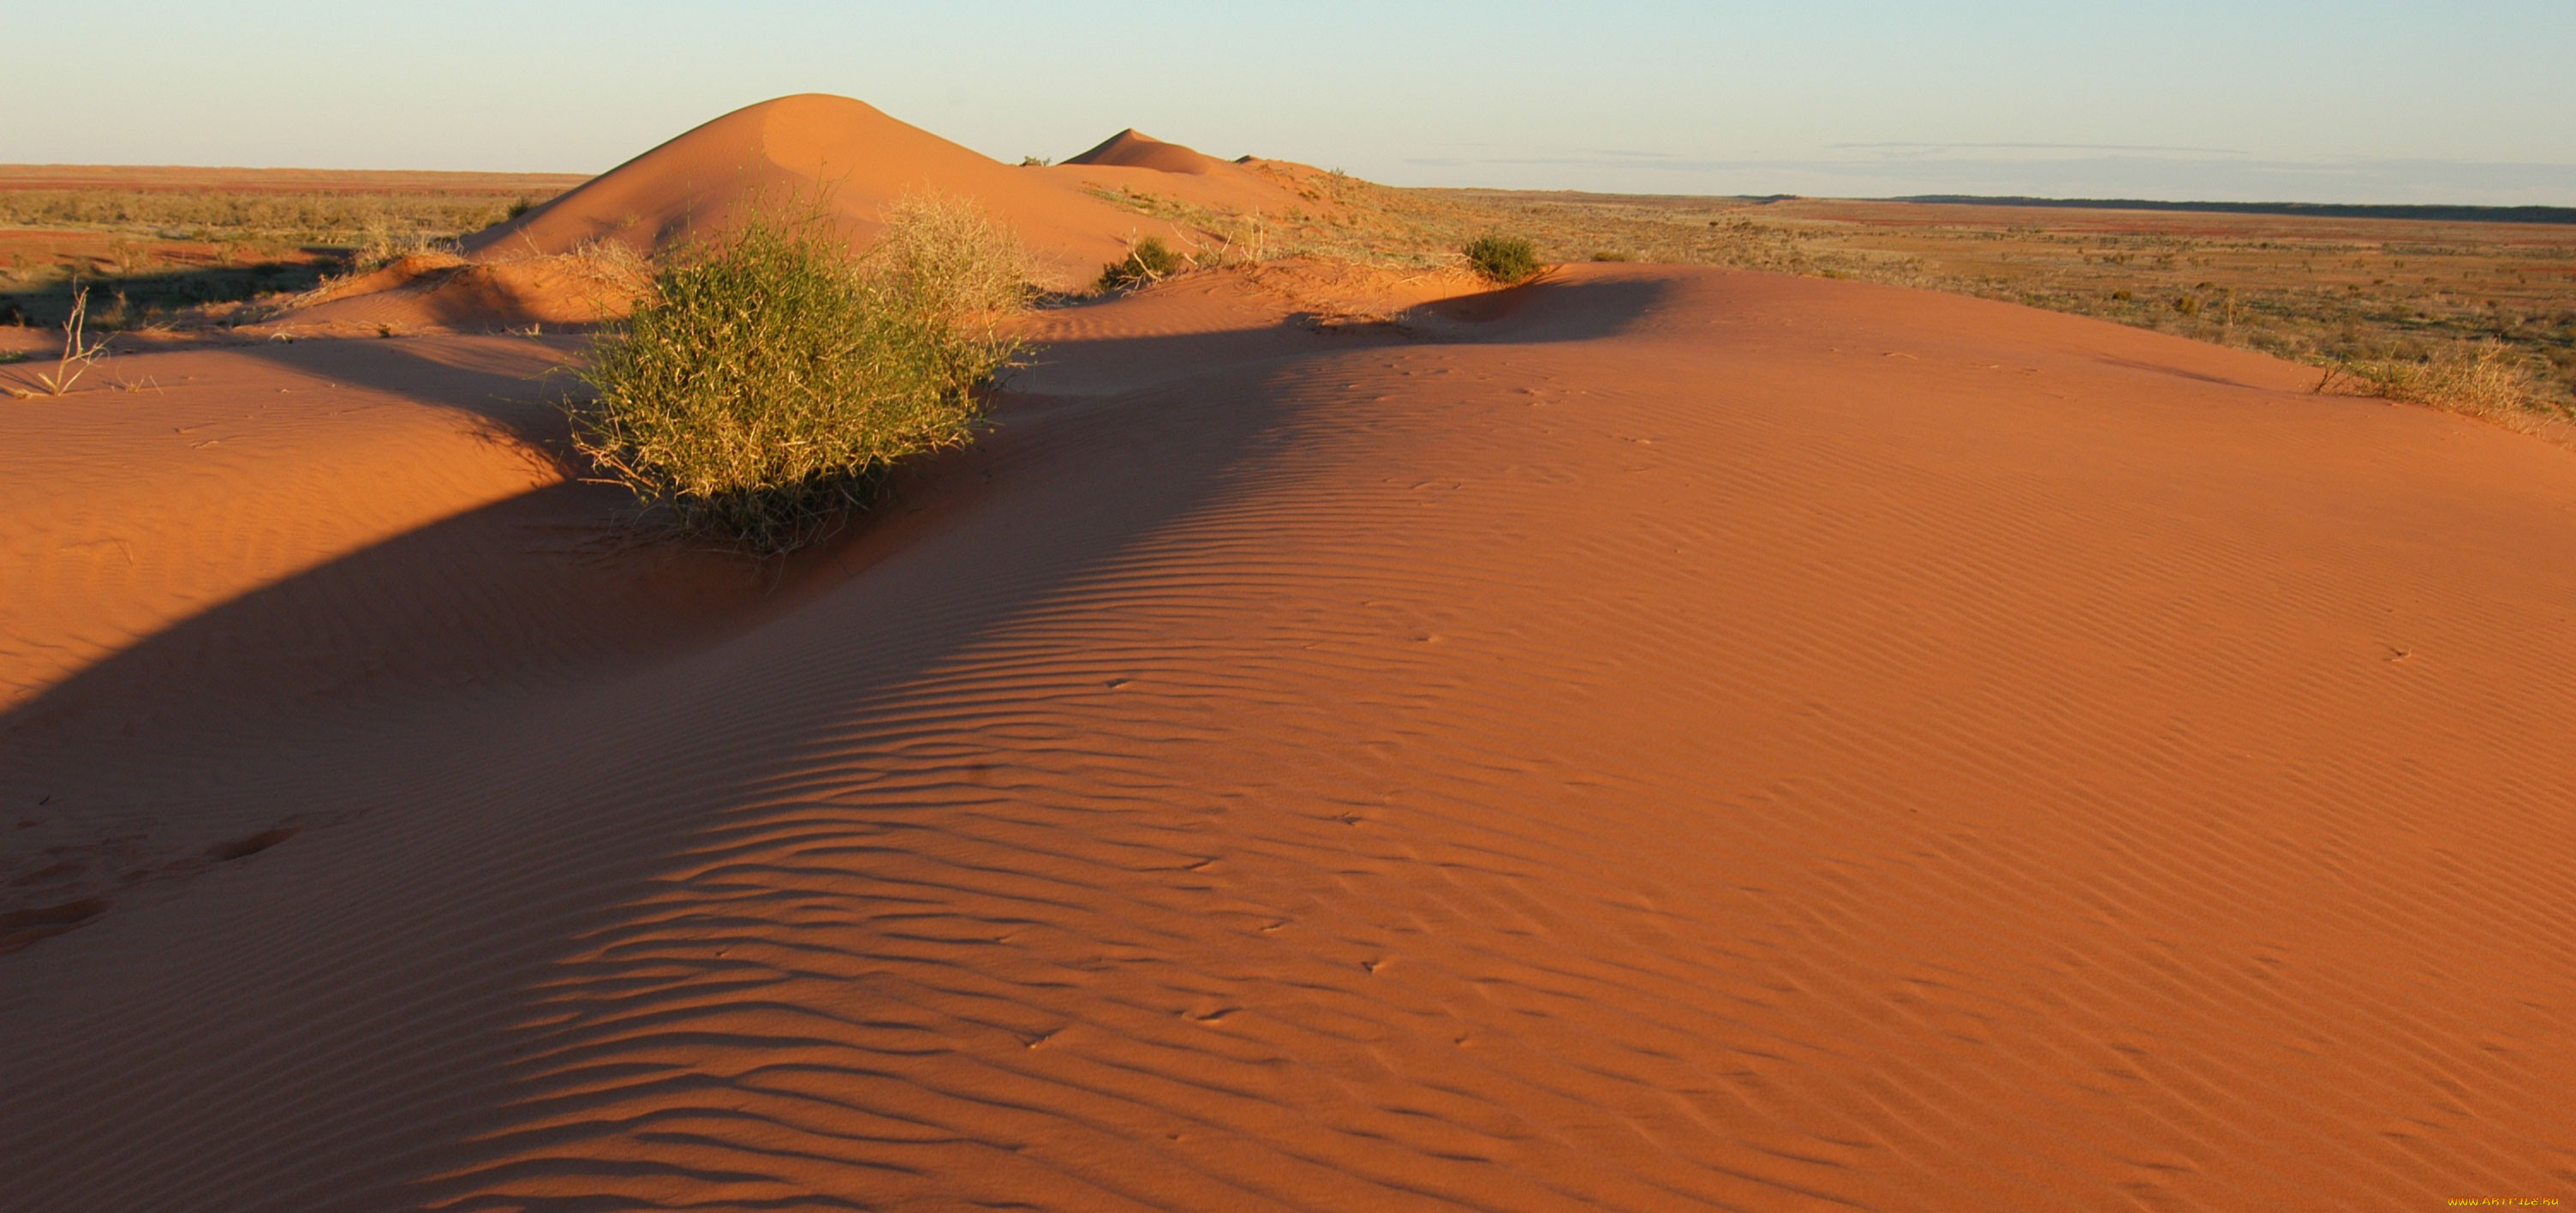 природа, пустыни, пустыня, барханы, песок